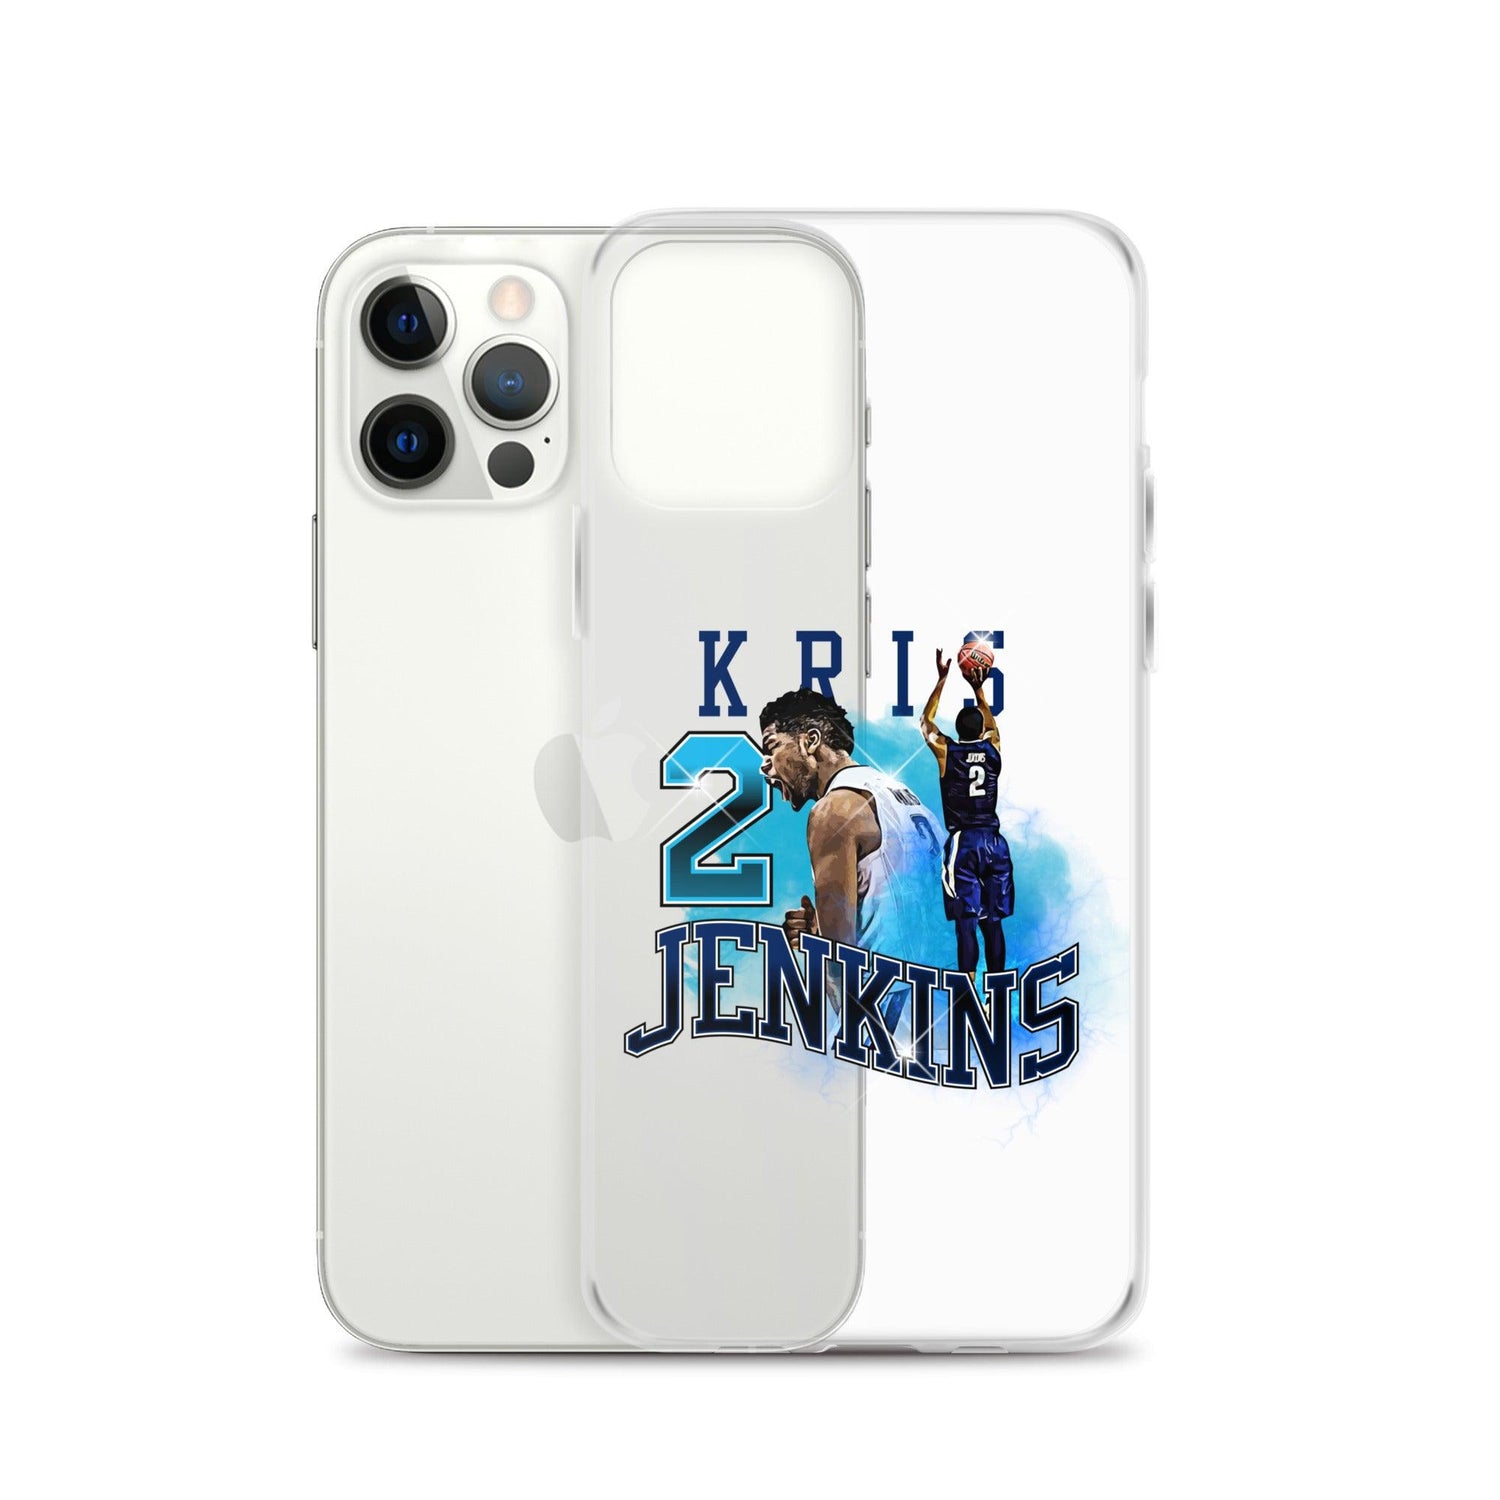 Kris Jenkins "Legacy" iPhone Case - Fan Arch